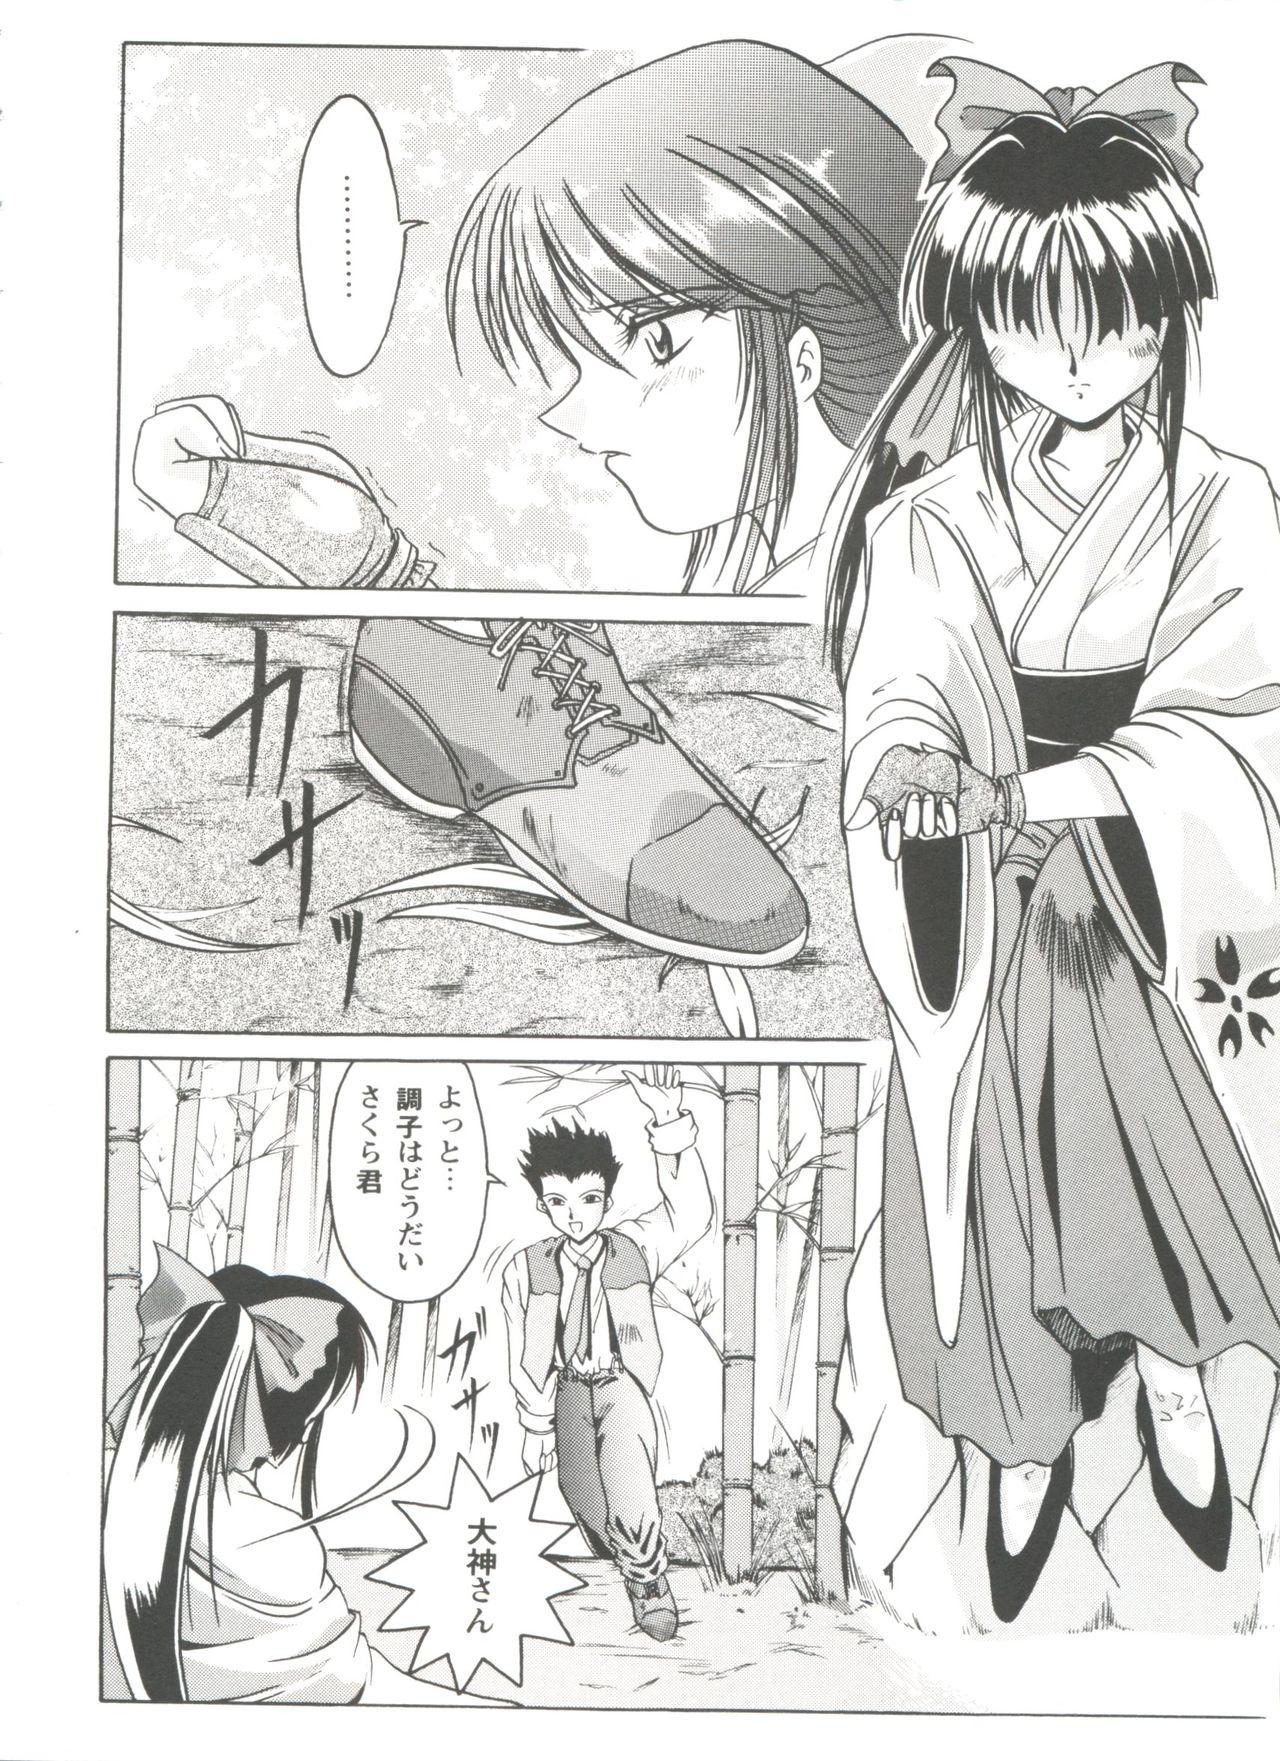 Ninfeta Girl's Parade Scene 4 - Sakura taisen Martian successor nadesico Slayers Yu yu hakusho Assfucking - Page 7